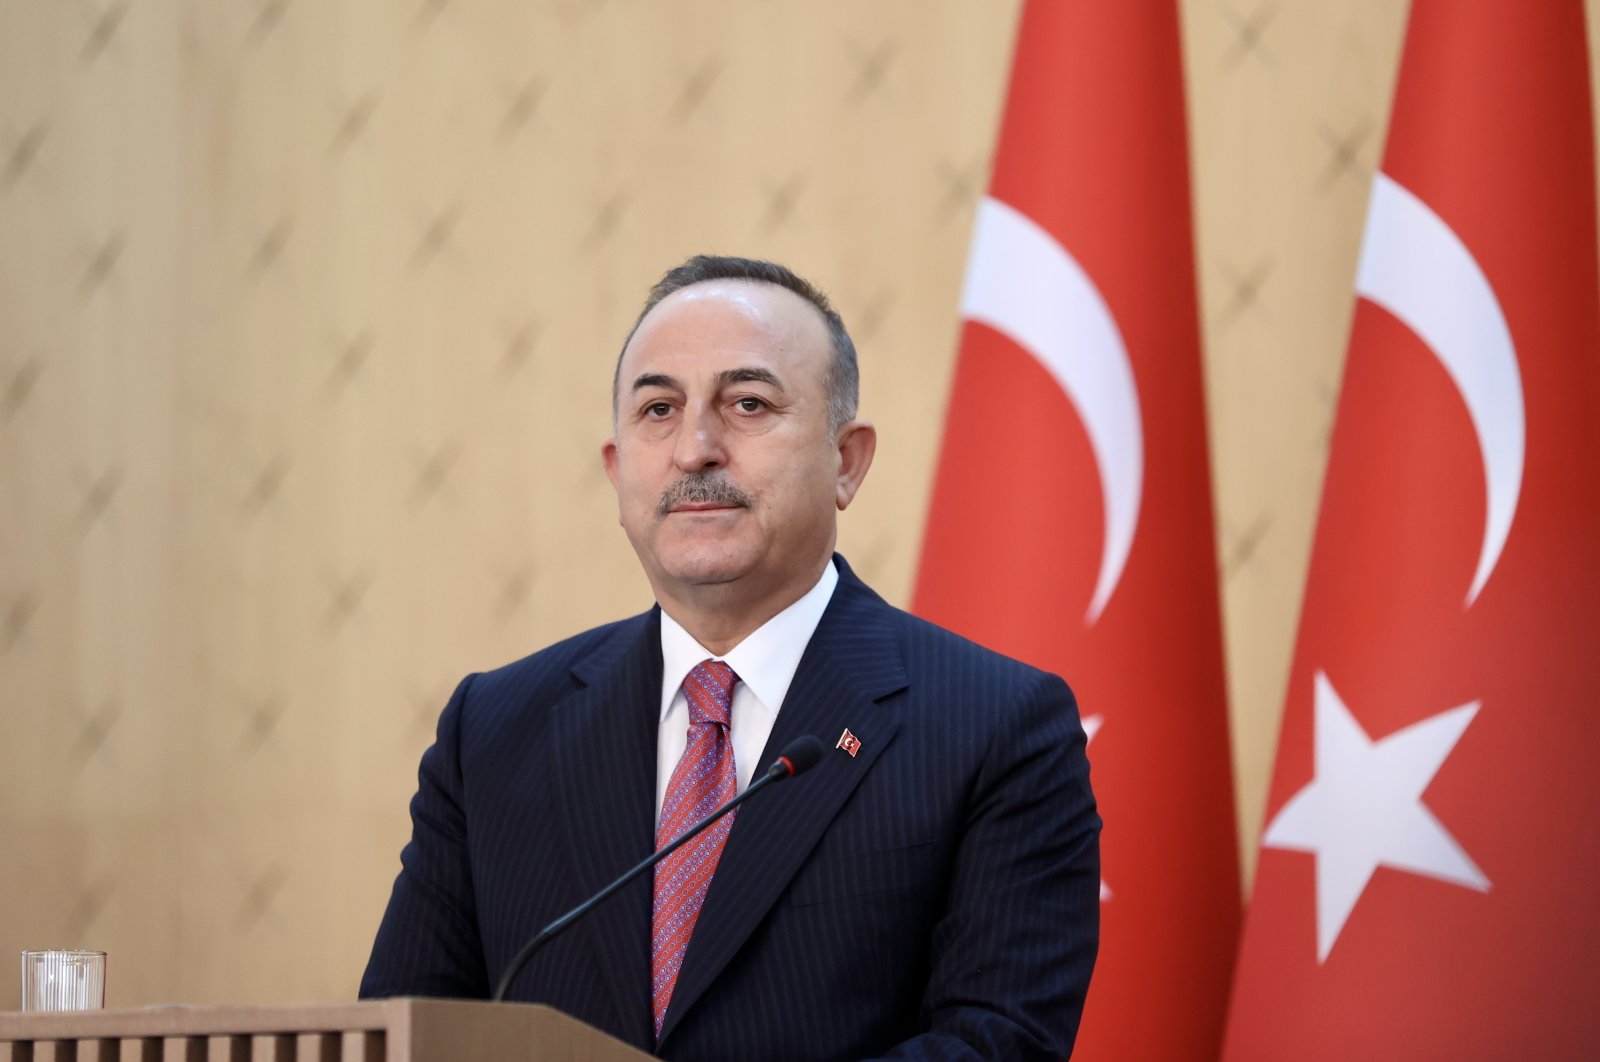 FM Rusia dan Ukraina akan bertemu di Turki, kata FM avuşoğlu